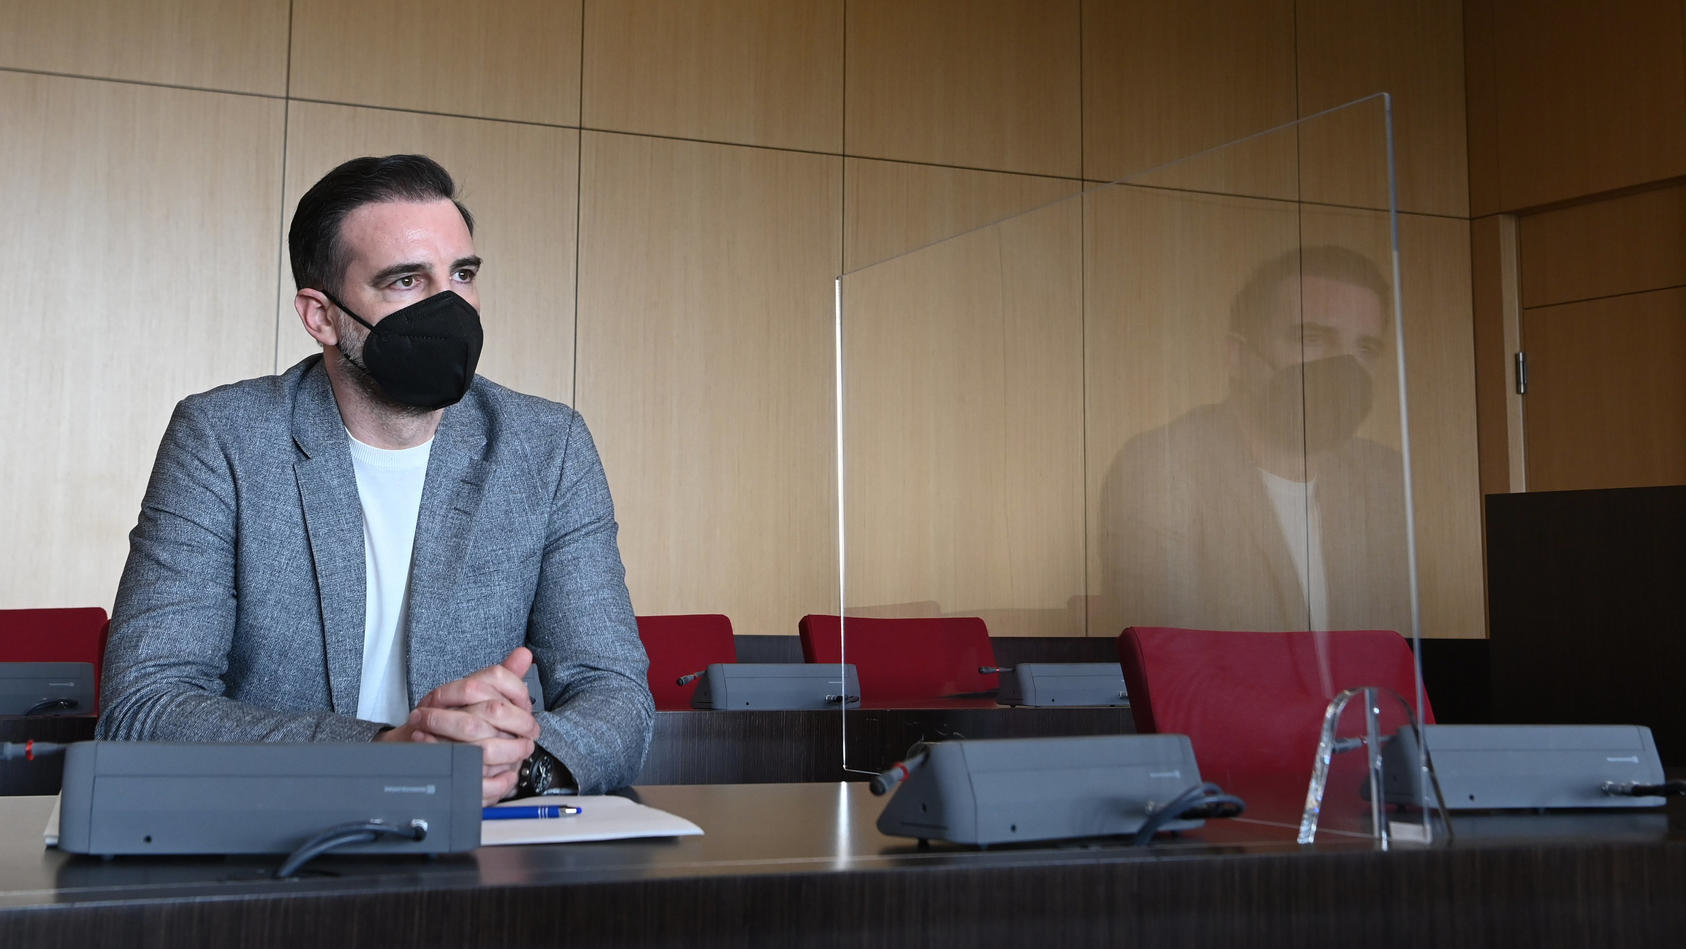 29.04.2021, Nordrhein-Westfalen, Düsseldorf: Der angeklagte Christoph Metzelder, ehemaliger Fußball-Nationalspieler, sitzt in einem Saal des Amtsgerichts auf der Anklagebank. Die Ermittler werfen dem 40-Jährigen vor, es unternommen zu haben, einer Pe